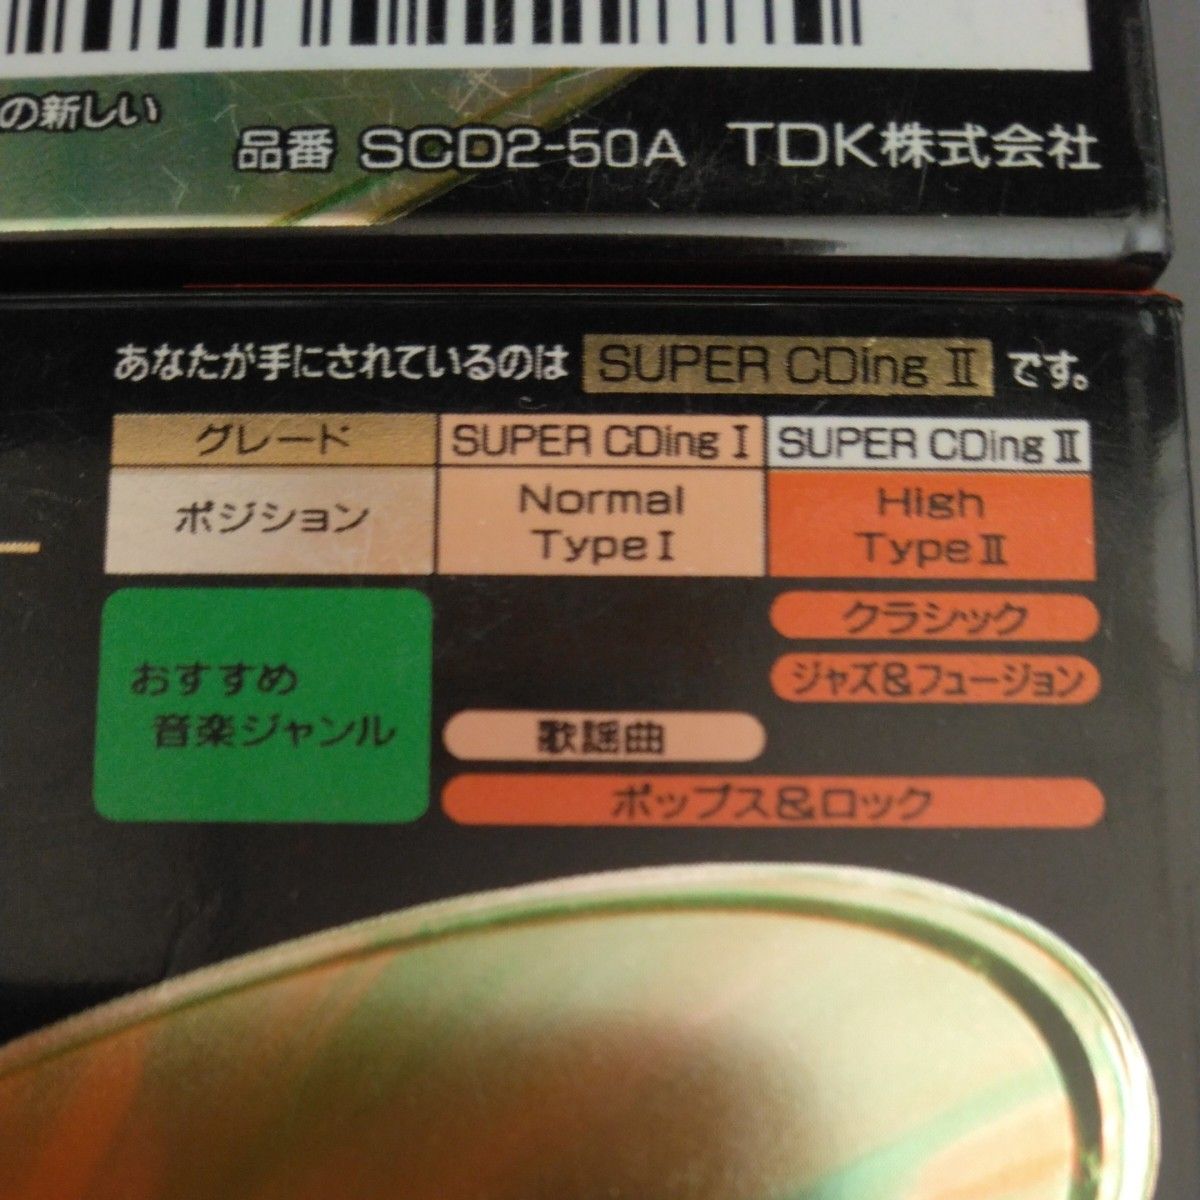 TDK カセットテープ SUPER CDing2 50 ハイポジ